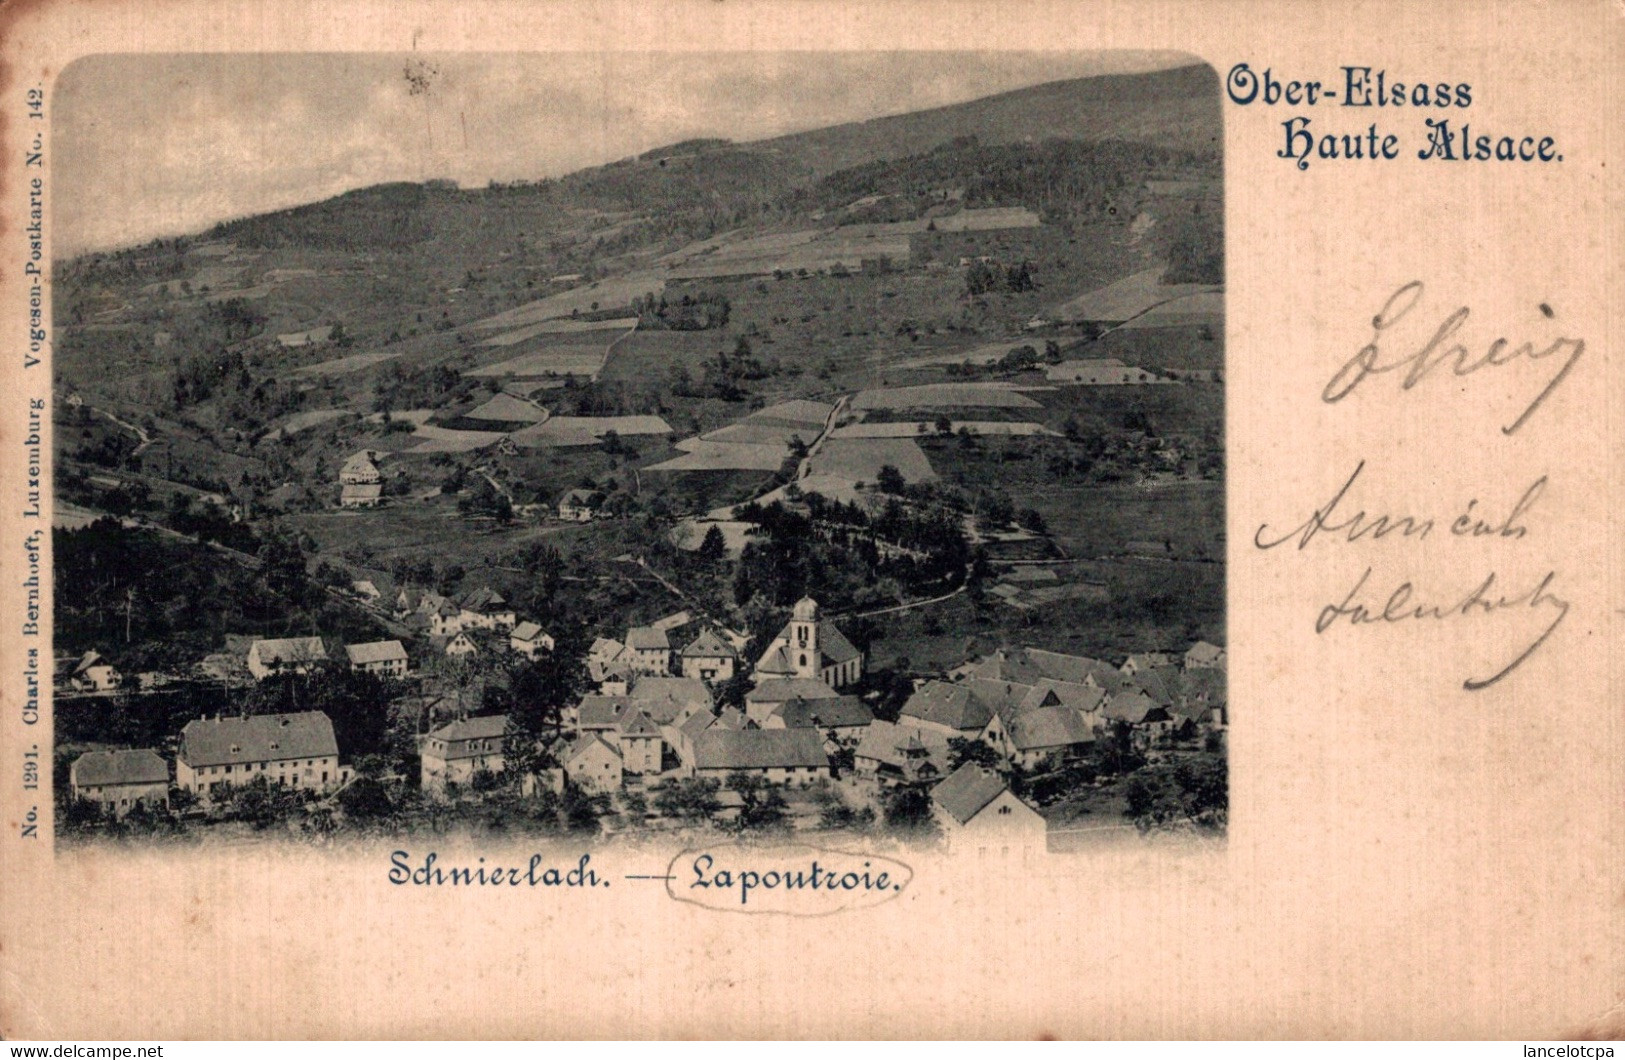 68 - SCHNIERLACH - LAPOUTROIE / OBER ELSASS - HAUTE ALSACE 1899 - Lapoutroie